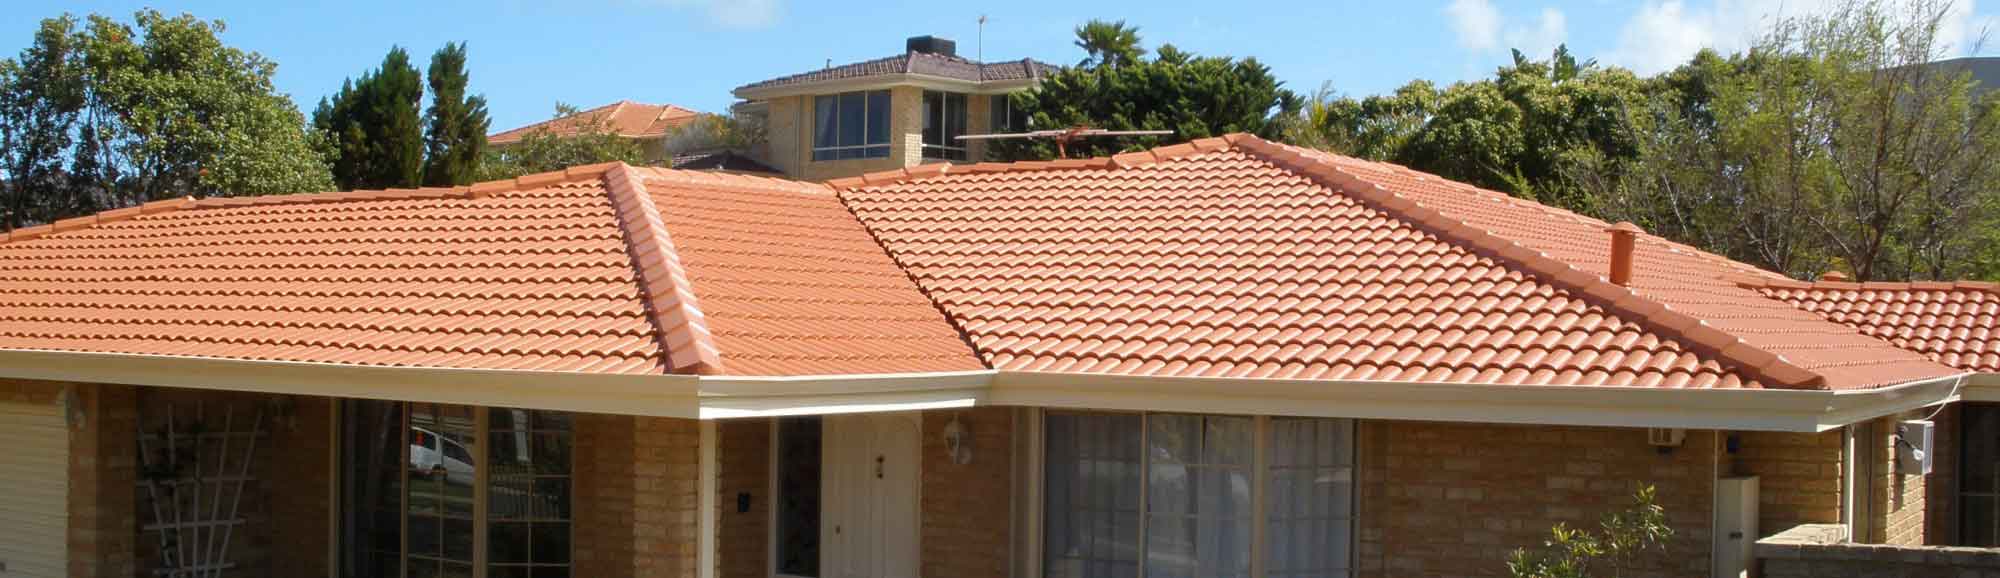 Roof Repair Perth